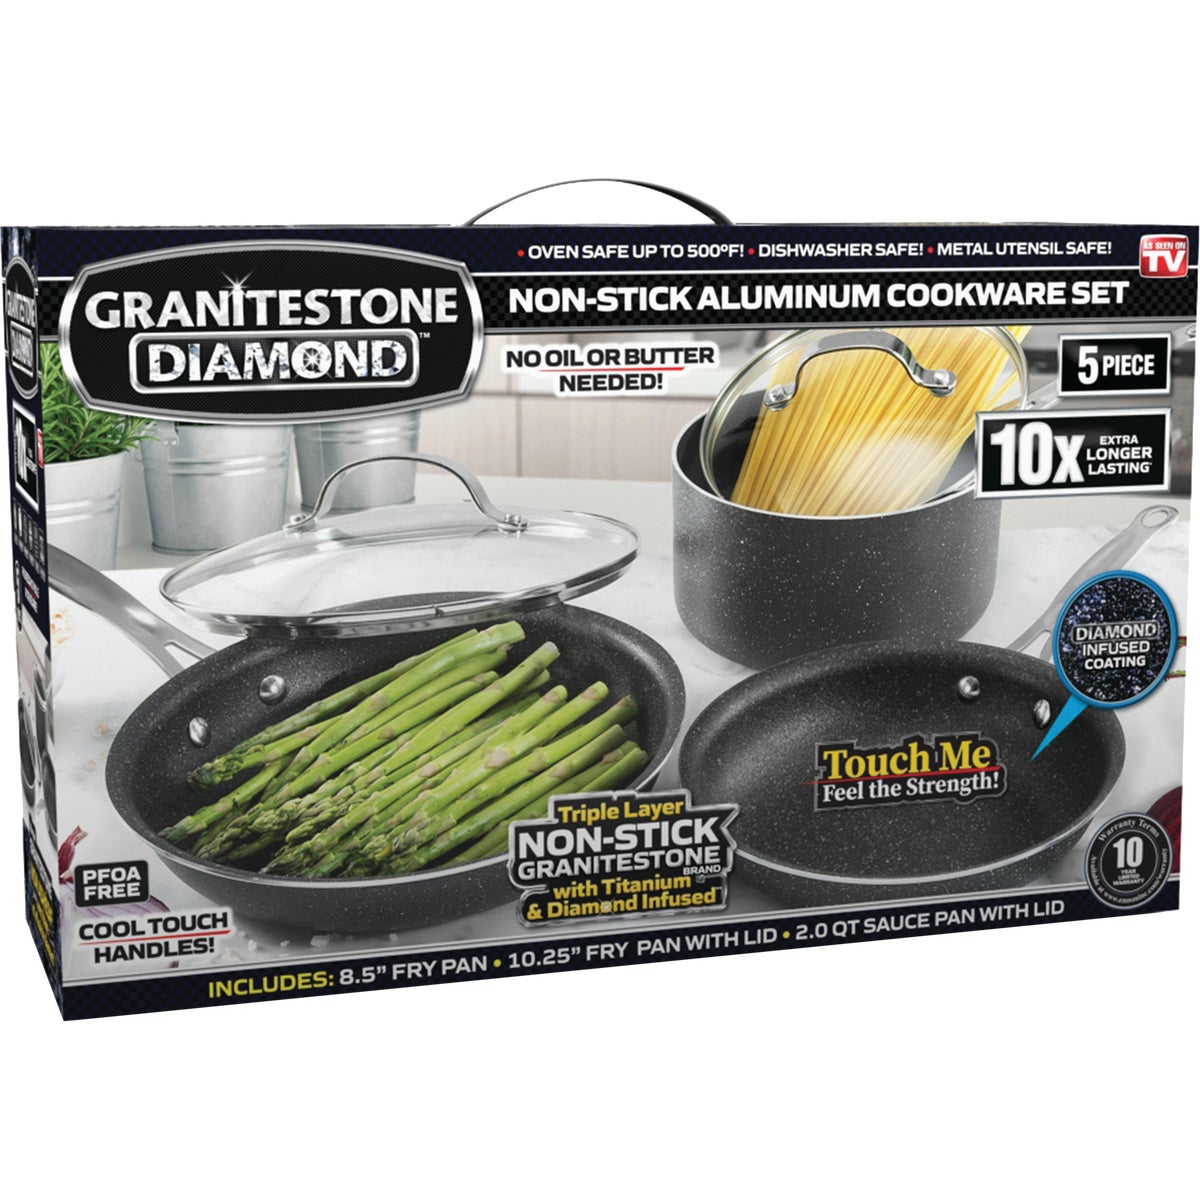 Item 636050, GraniteStone cookware set has a titanium non-stick coating that provides 